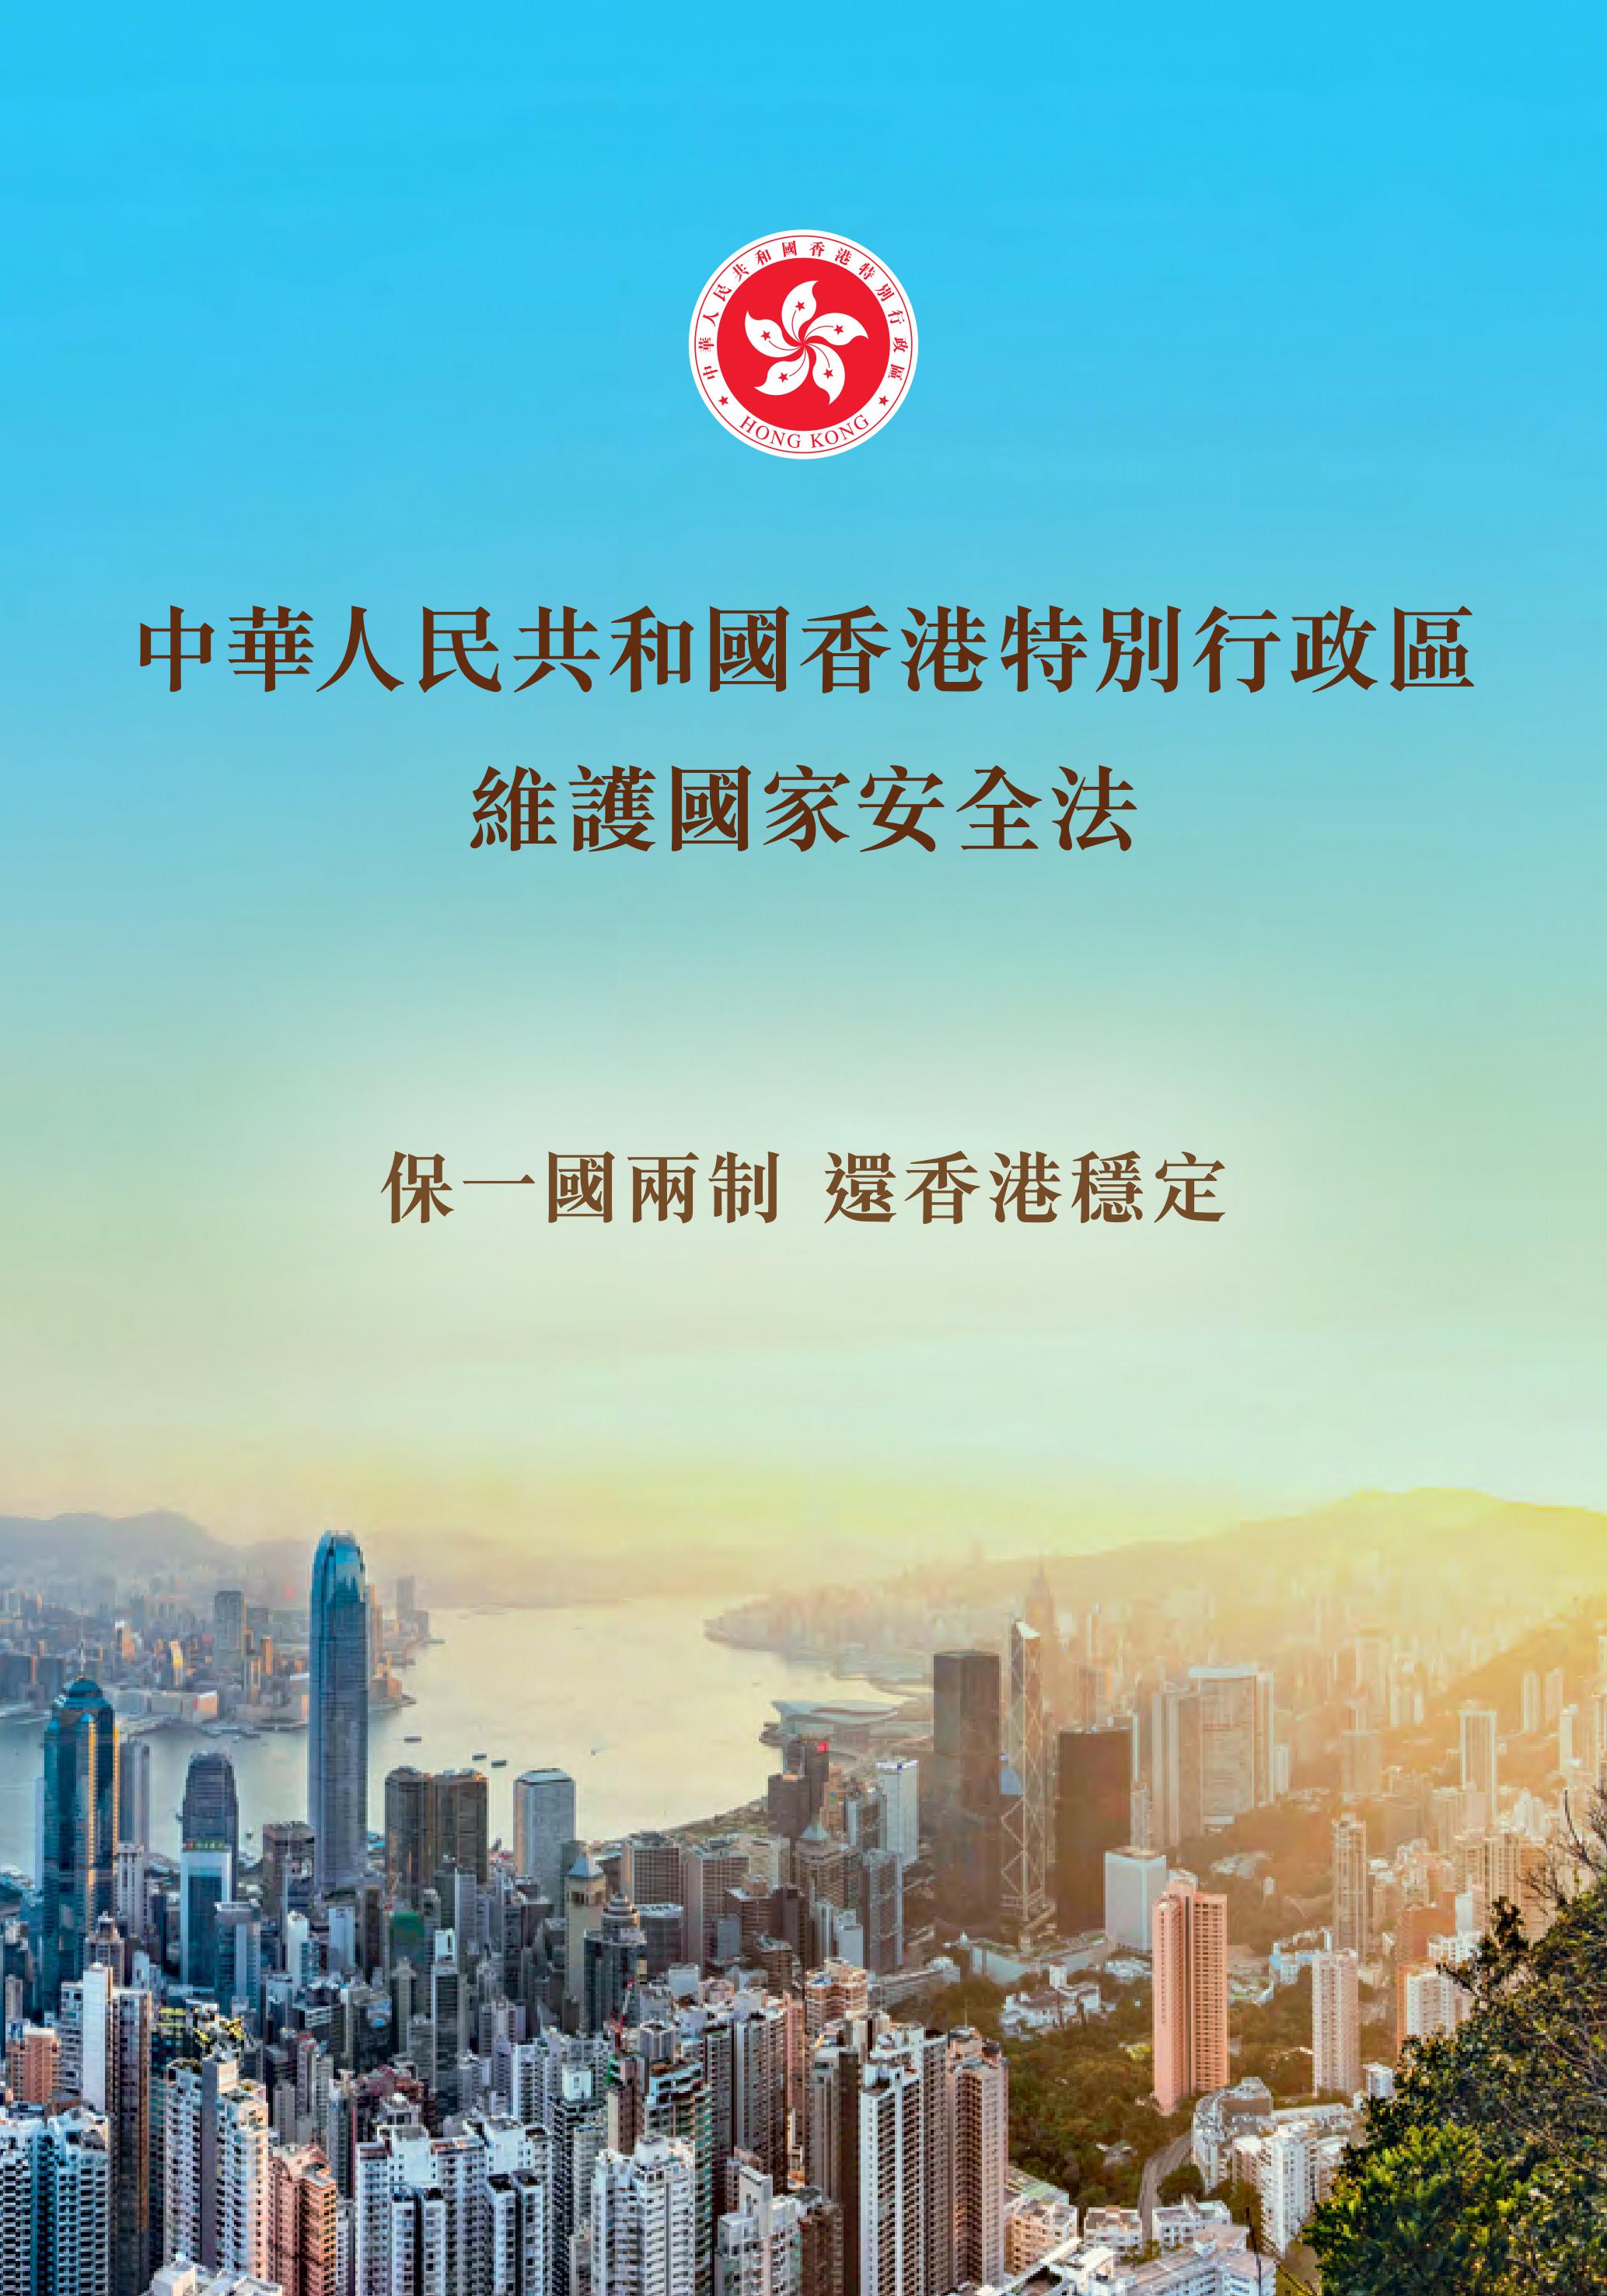 《中華人民共和國香港特別行政區<br>維護國家安全法》小冊子